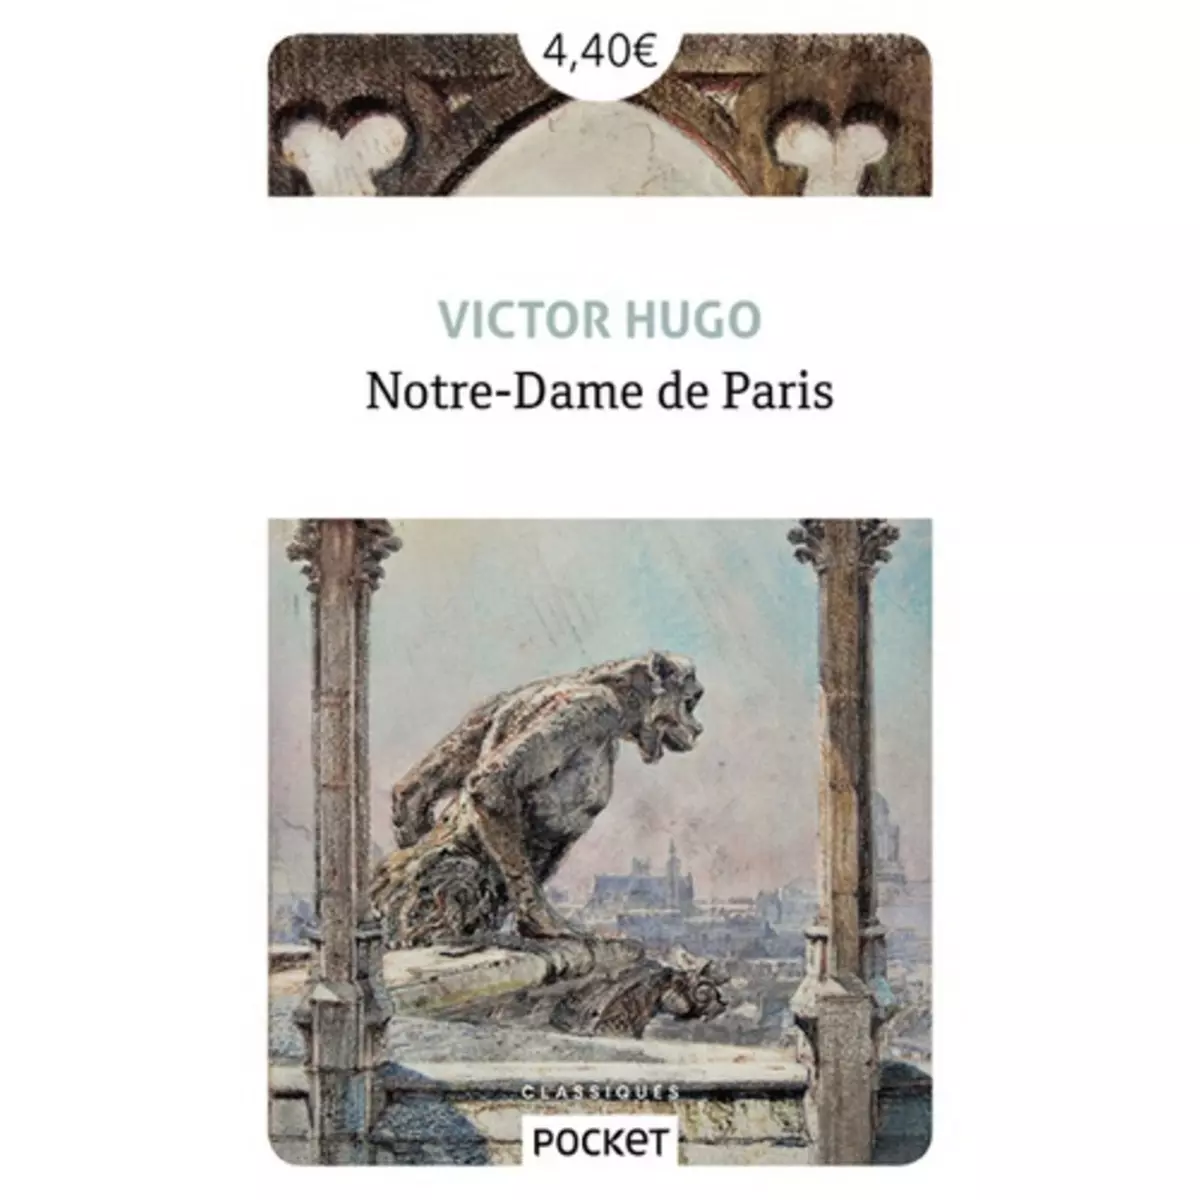  NOTRE-DAME DE PARIS, Hugo Victor